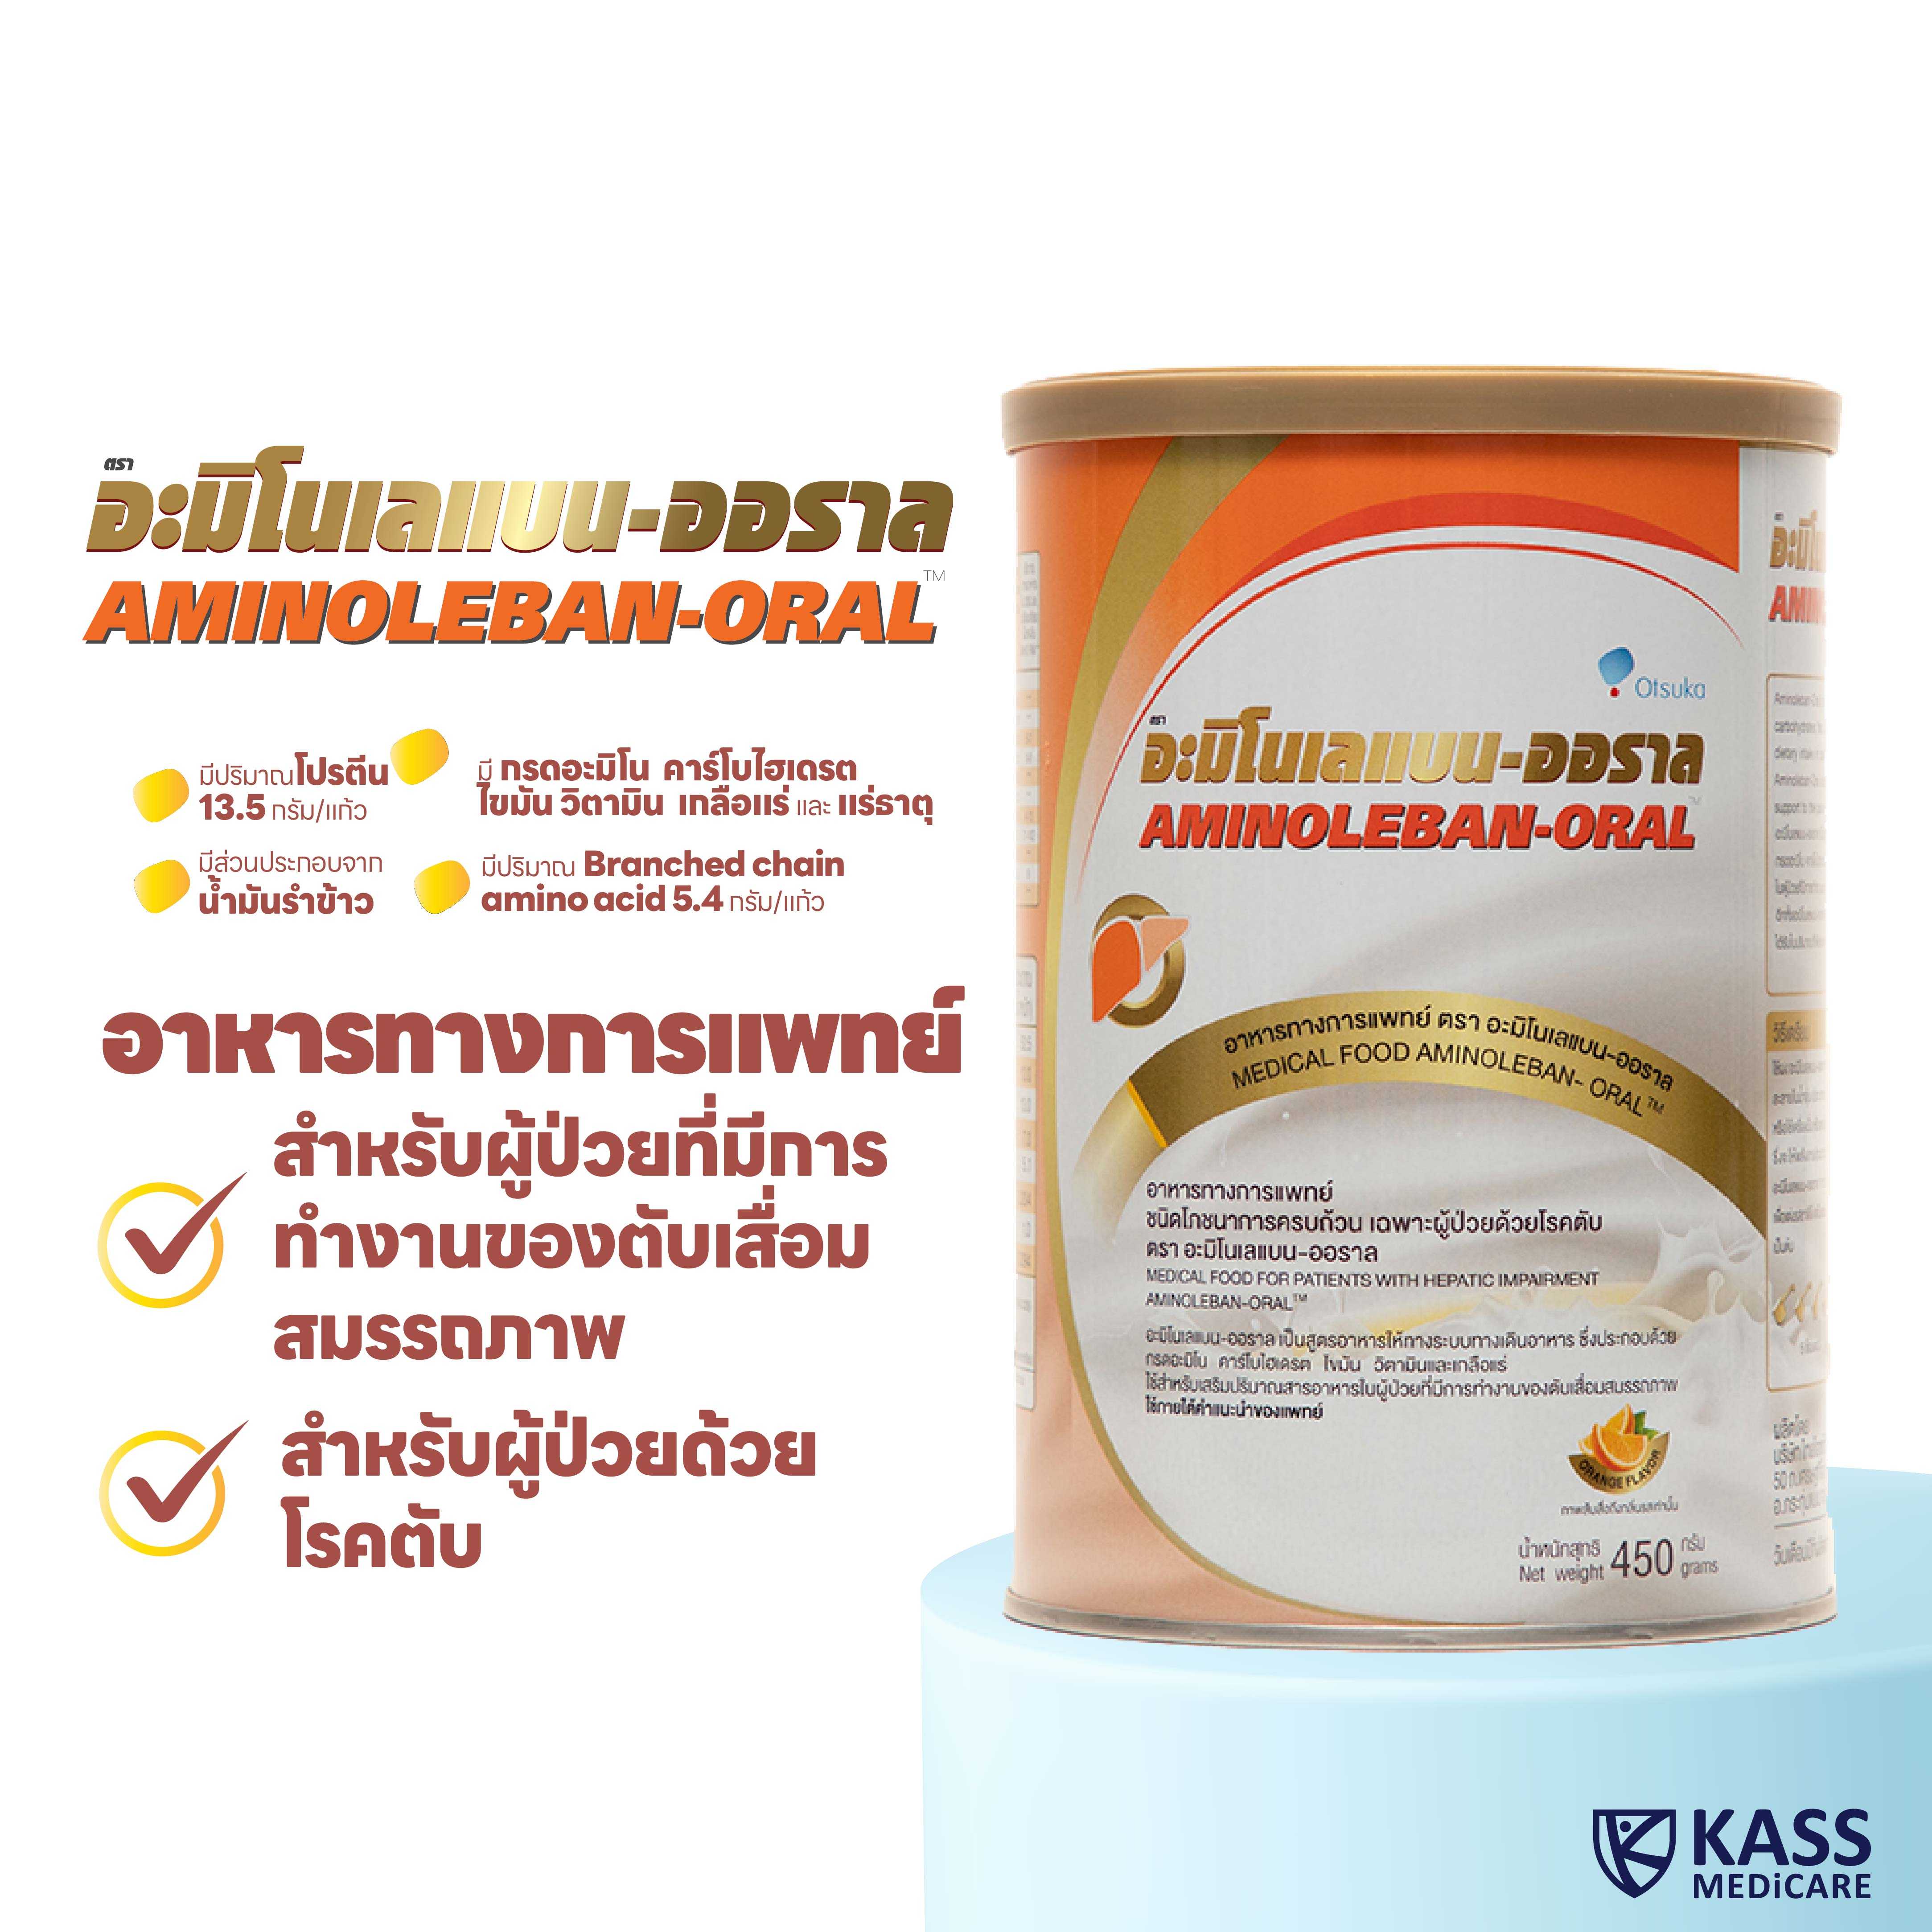 อะมิโนเลแบน-ออราล (Aminoleban-Oral) อาหารเสริมเฉพาะผู้ป่วยด้วยโรคตับ 450 g.